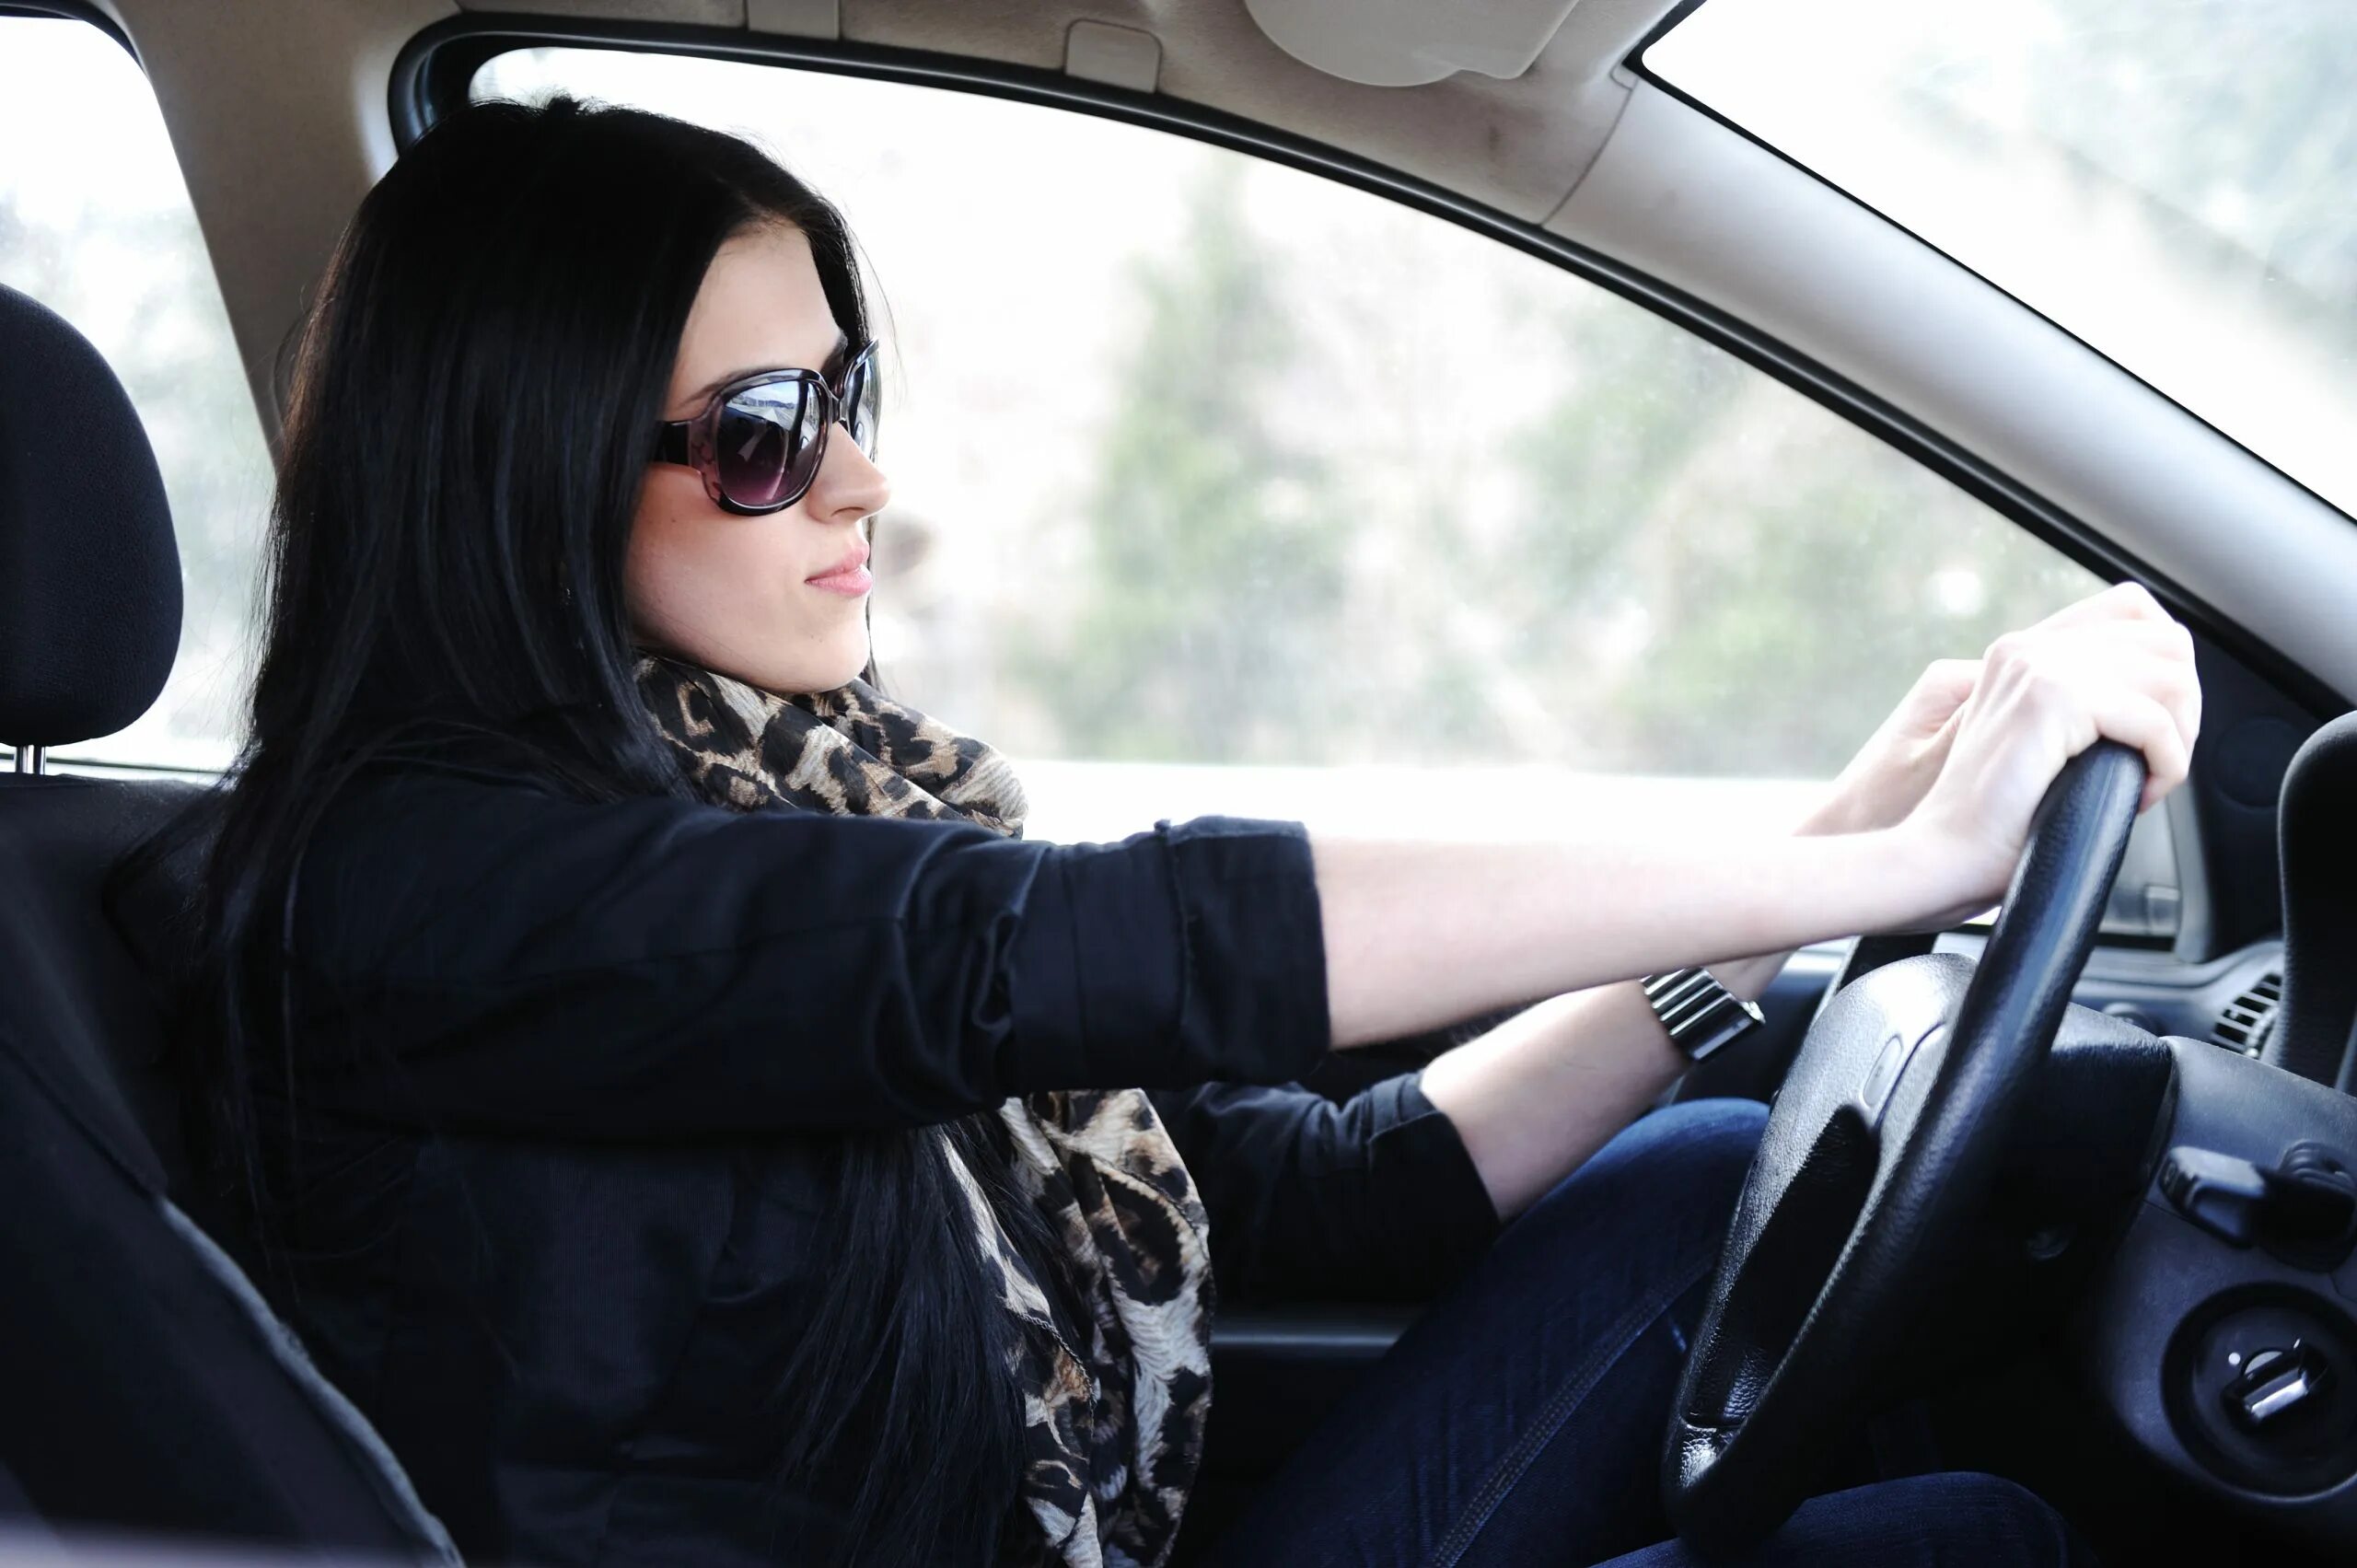 Девушка в авто в очках. Девушка водит машину. Девушка в солнцезащитных очках в машине. Девушка в очках сидит в машине. Сижу в машине песня